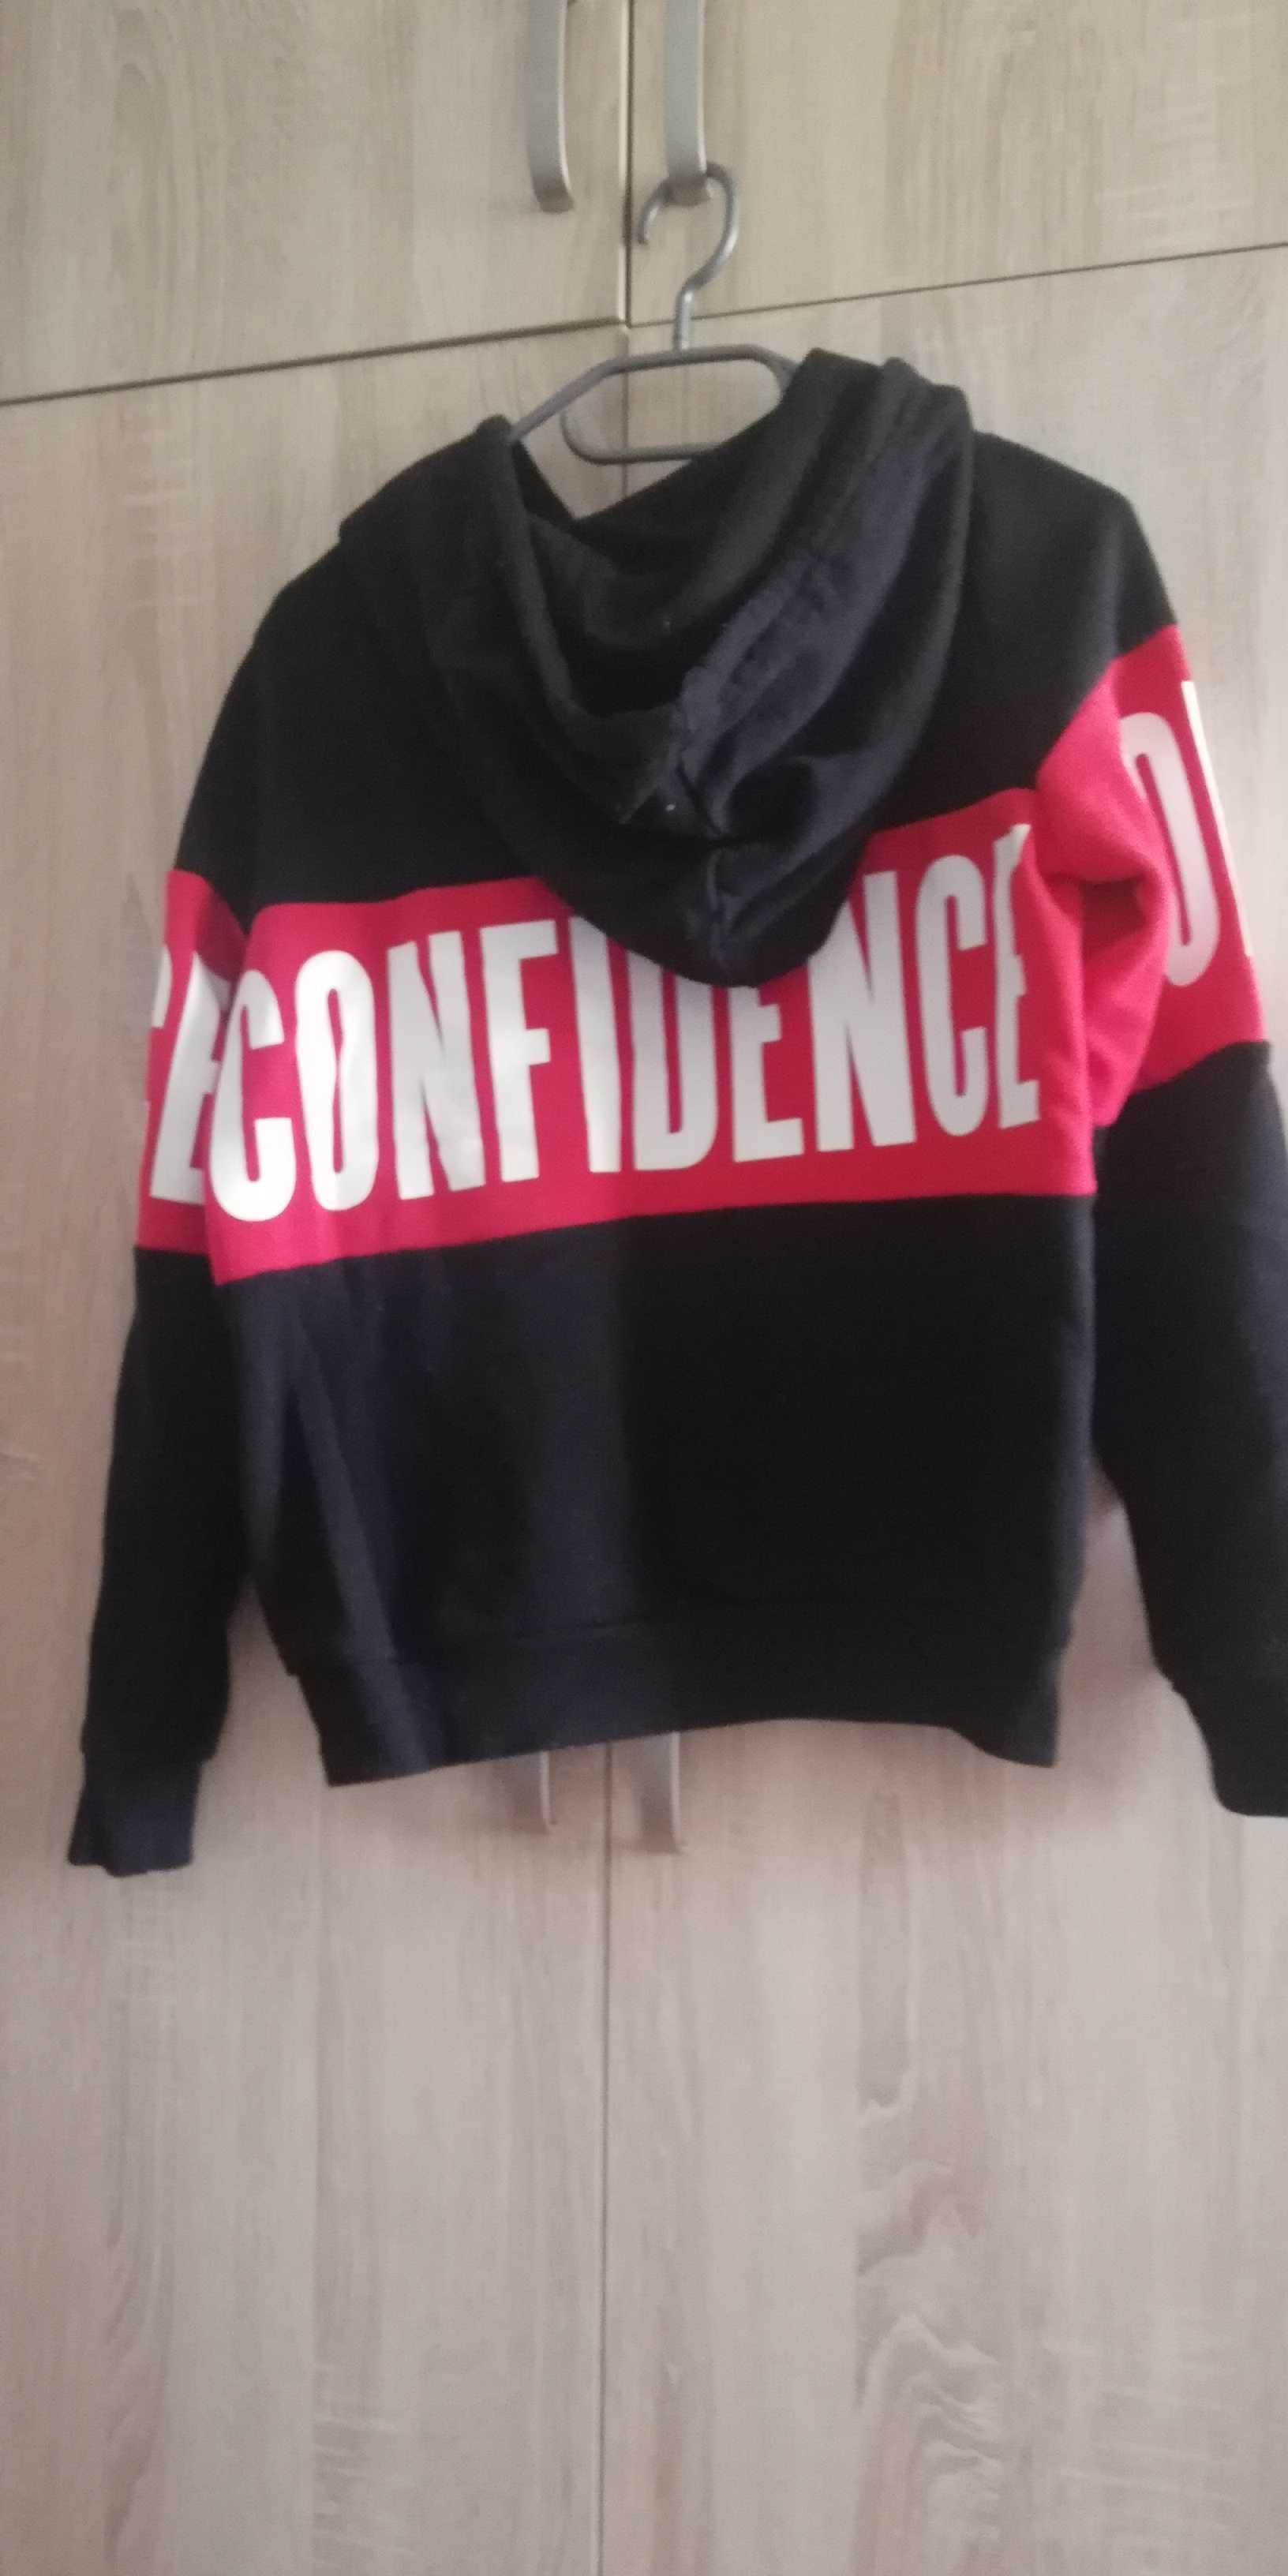 Bluza czarna Confidence (Zaufanie) r. XS